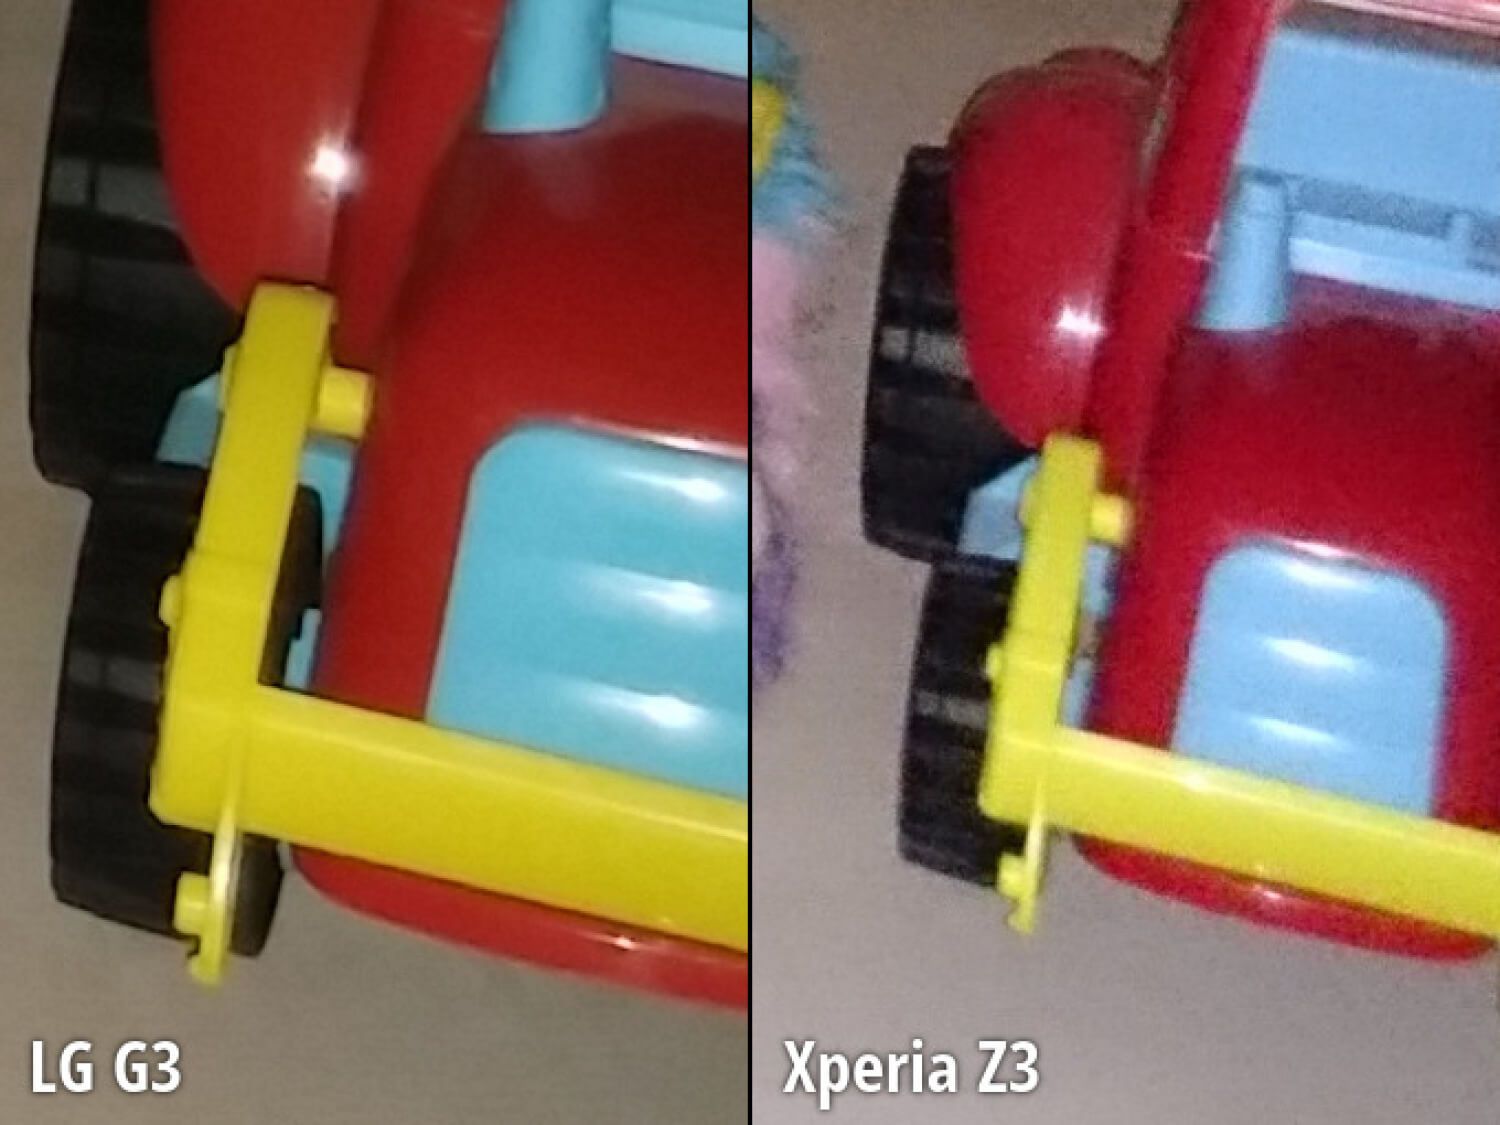 Cравнение камер LG G3 и Sony Xperia Z3. Седьмой сюжет. Фото.